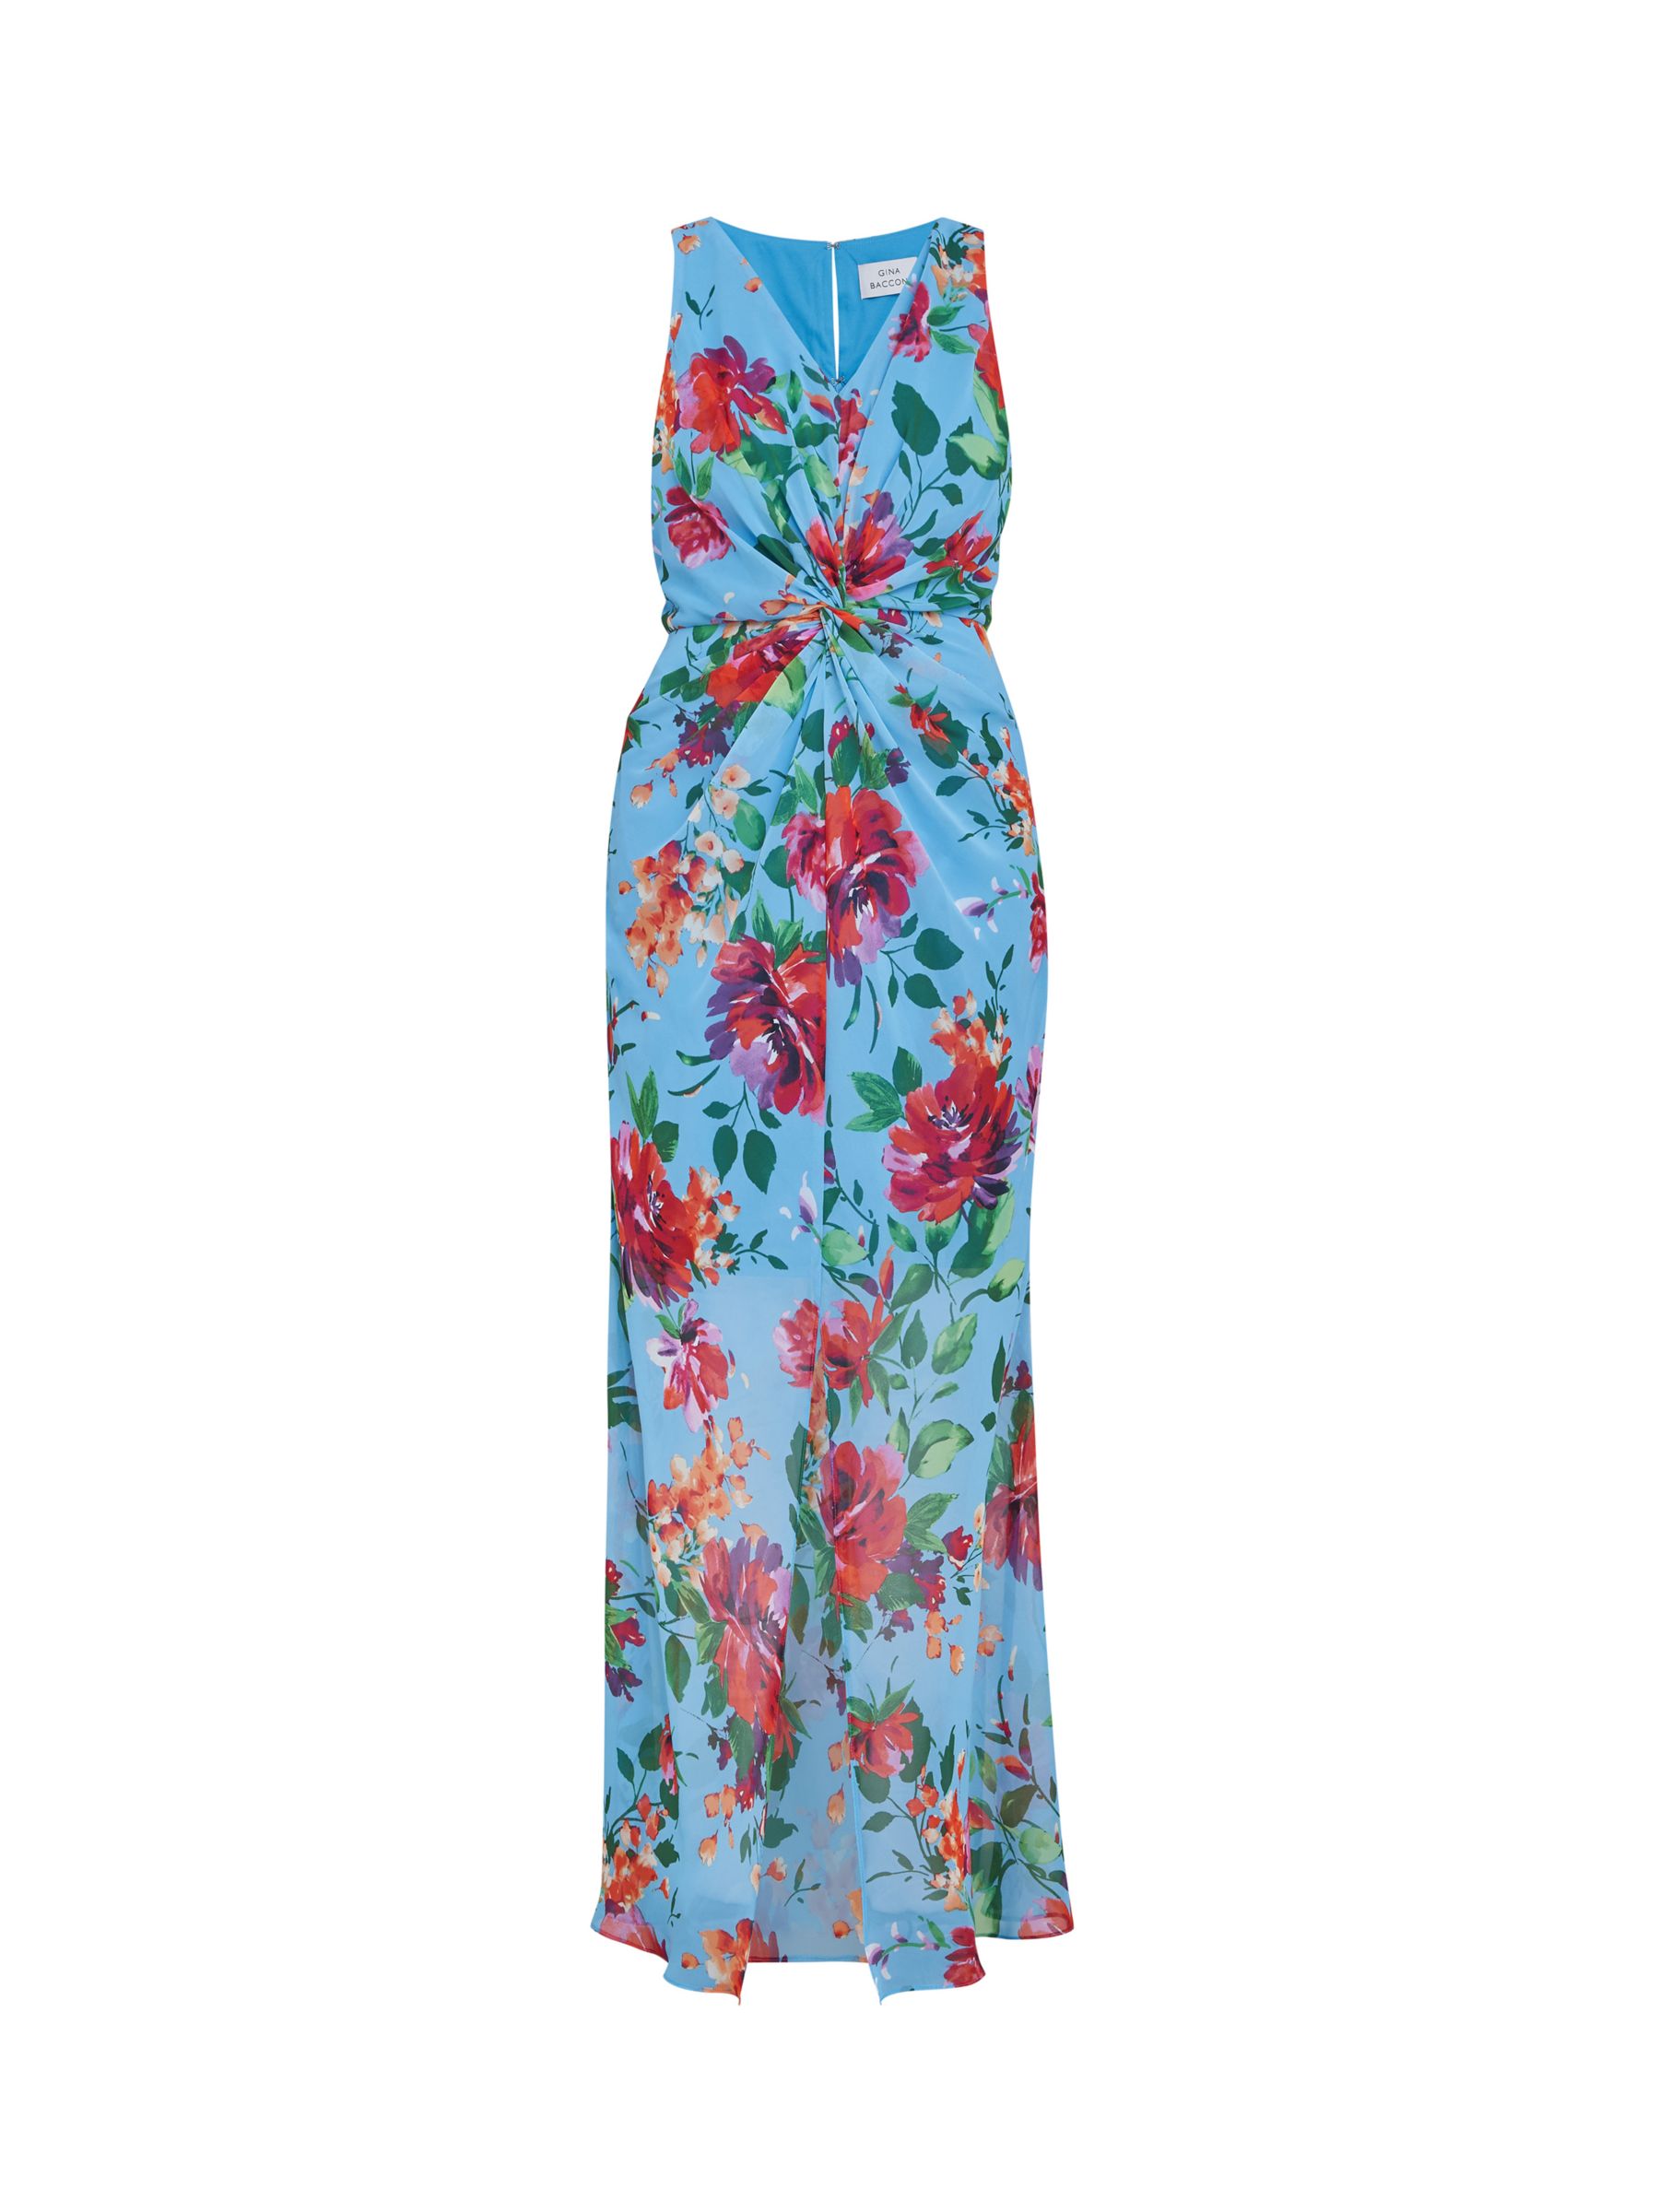 Gina Bacconi Jennifer Floral Twist Detail Maxi Dress, Aqua/Multi at ...